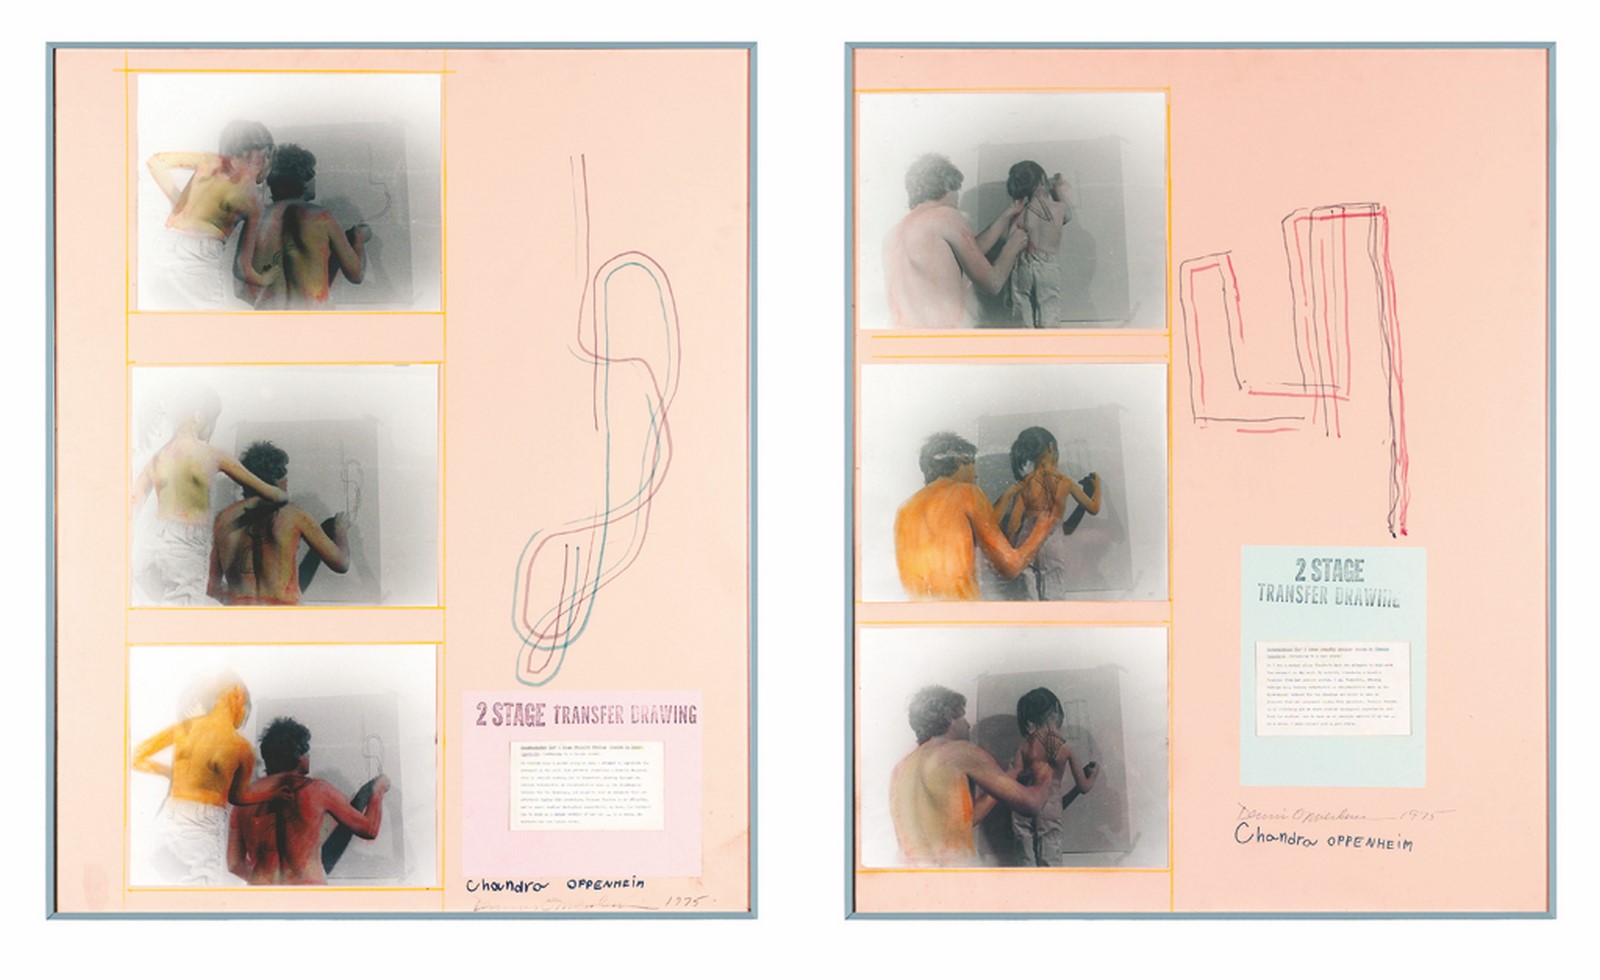 Dennis Oppenheim, Two stage transfer drawing, 1975, fotografia, disegno, foglio dattiloscritto su cartoncino, ed. unica, 102,5 x 82,5 cm, collezione privata, Bassano del Grappa